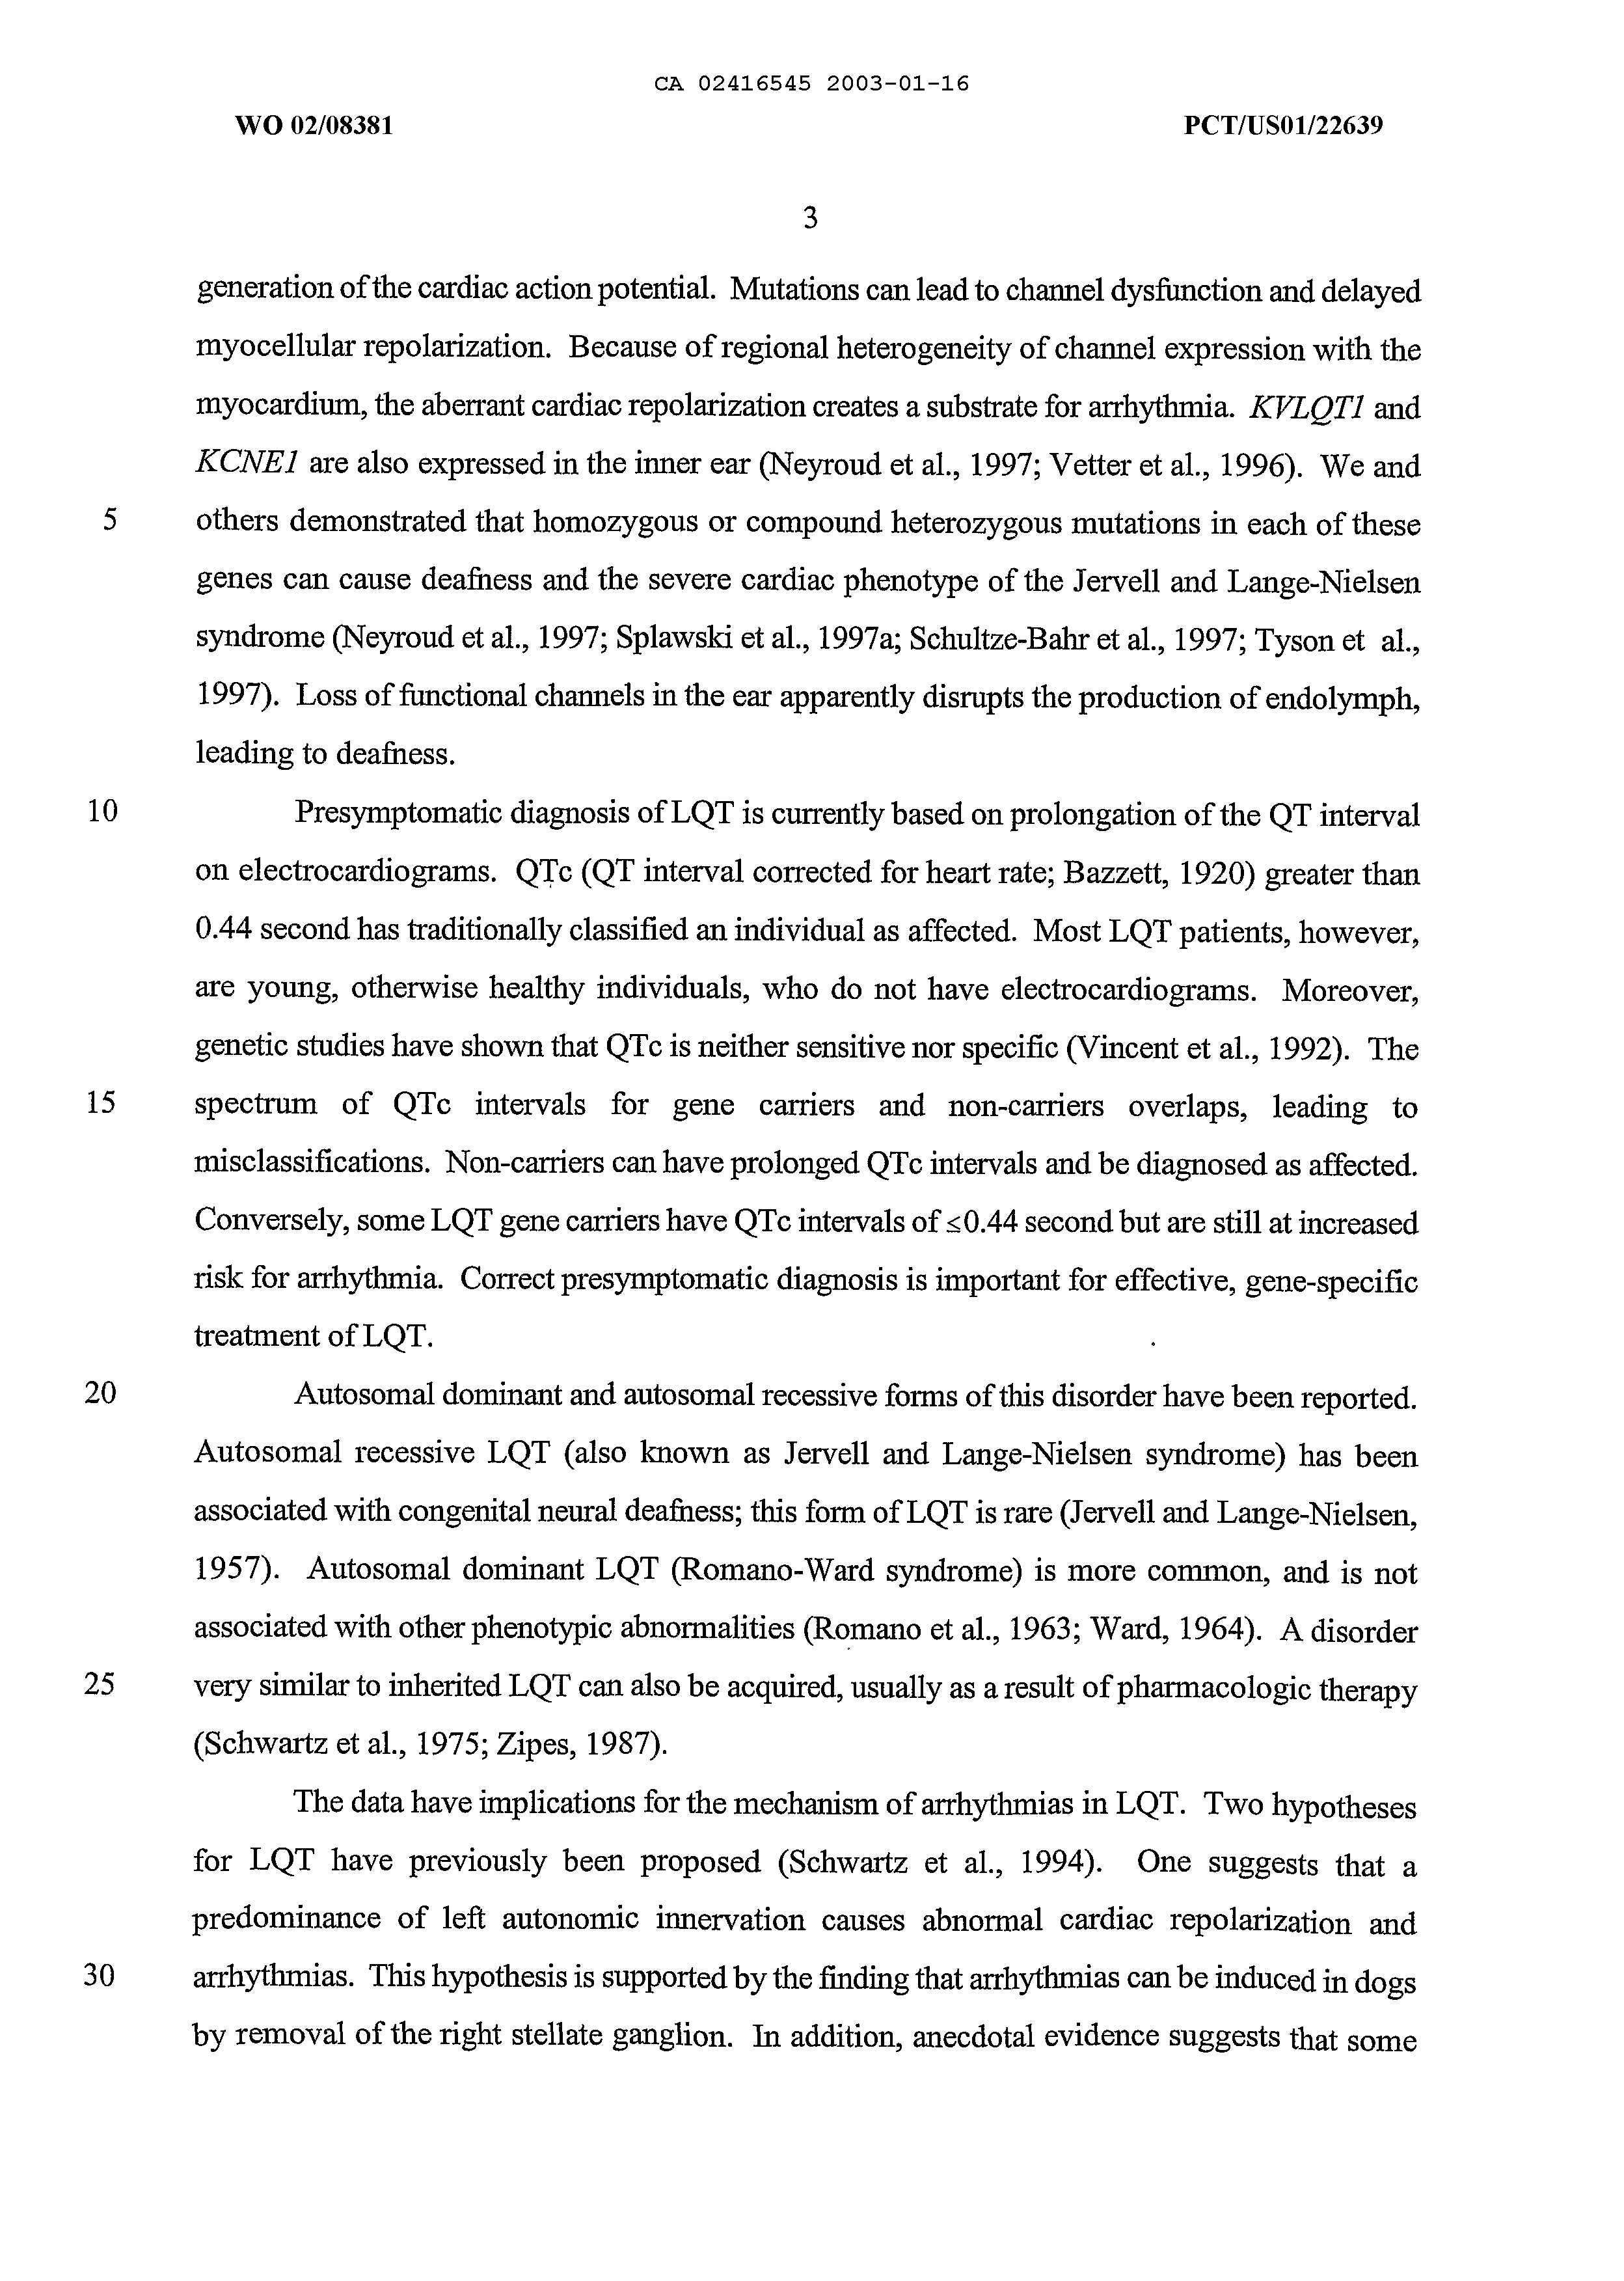 Canadian Patent Document 2416545. Description 20021216. Image 3 of 100